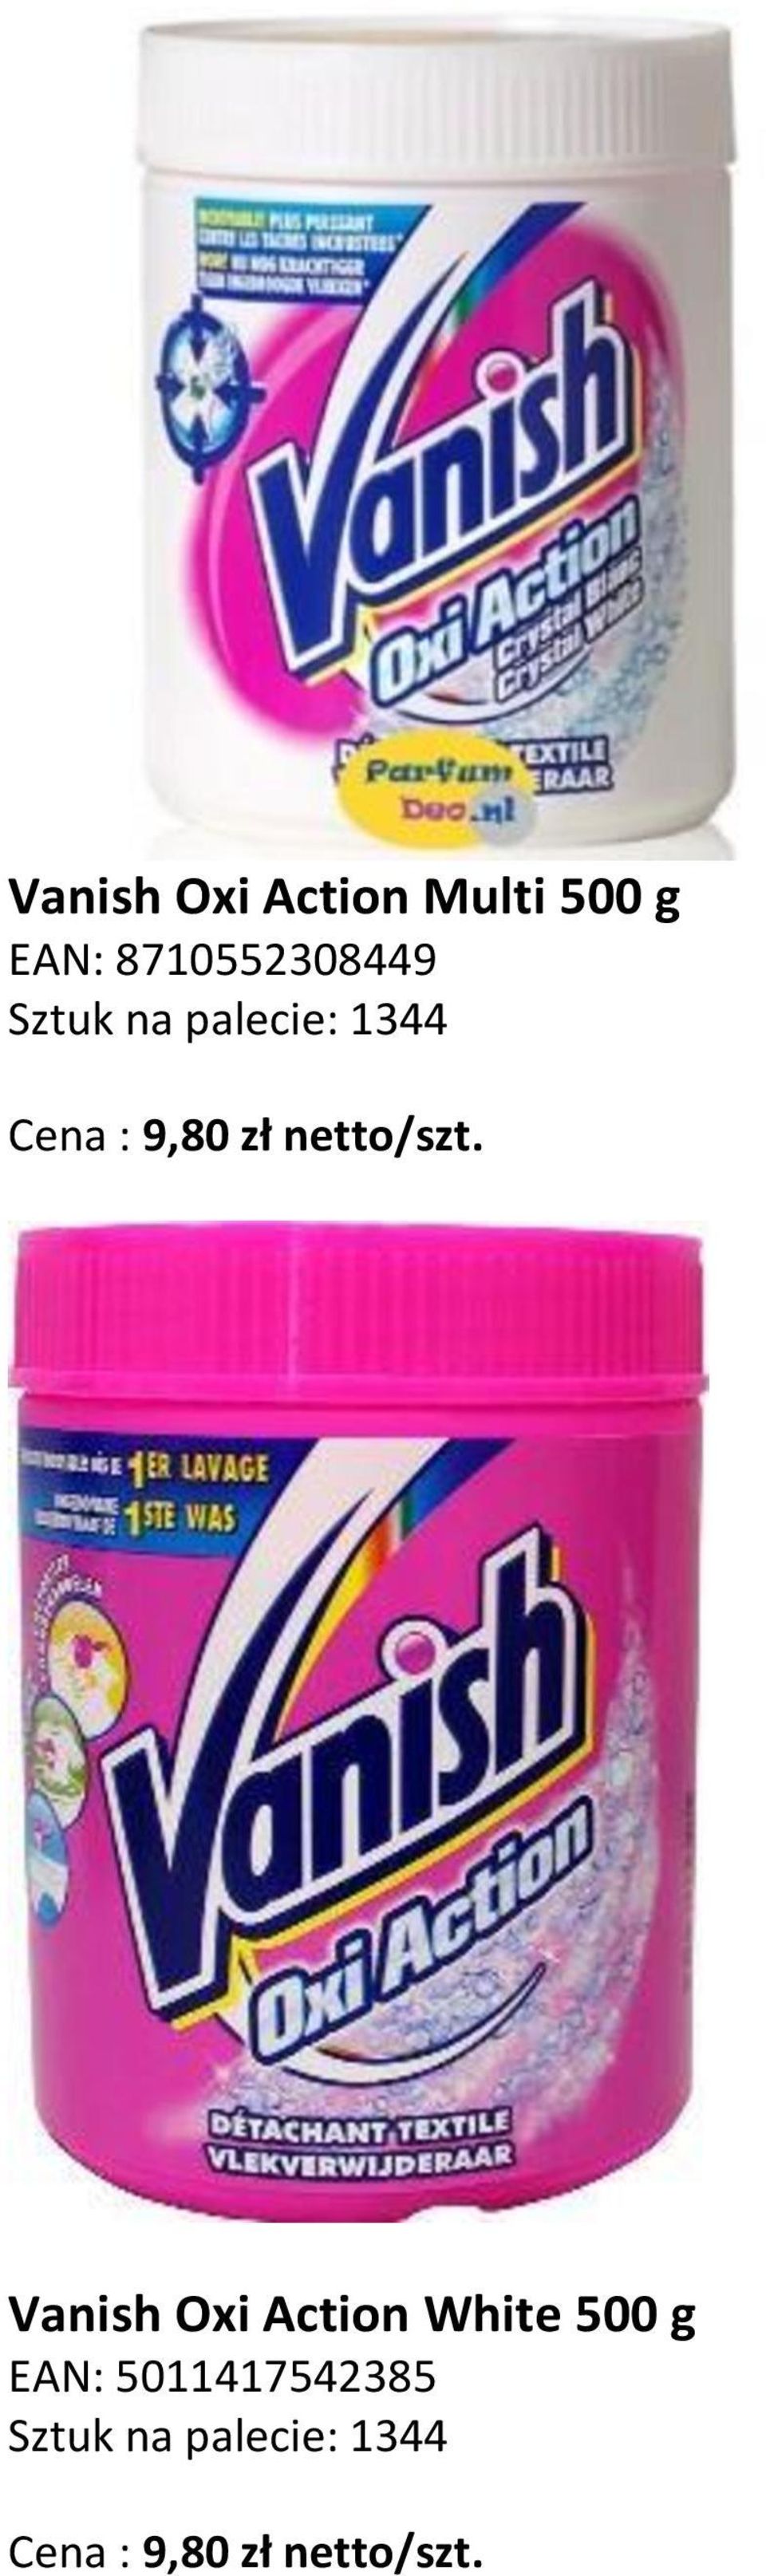 Vanish Oxi Action White 500 g EAN: 5011417542385